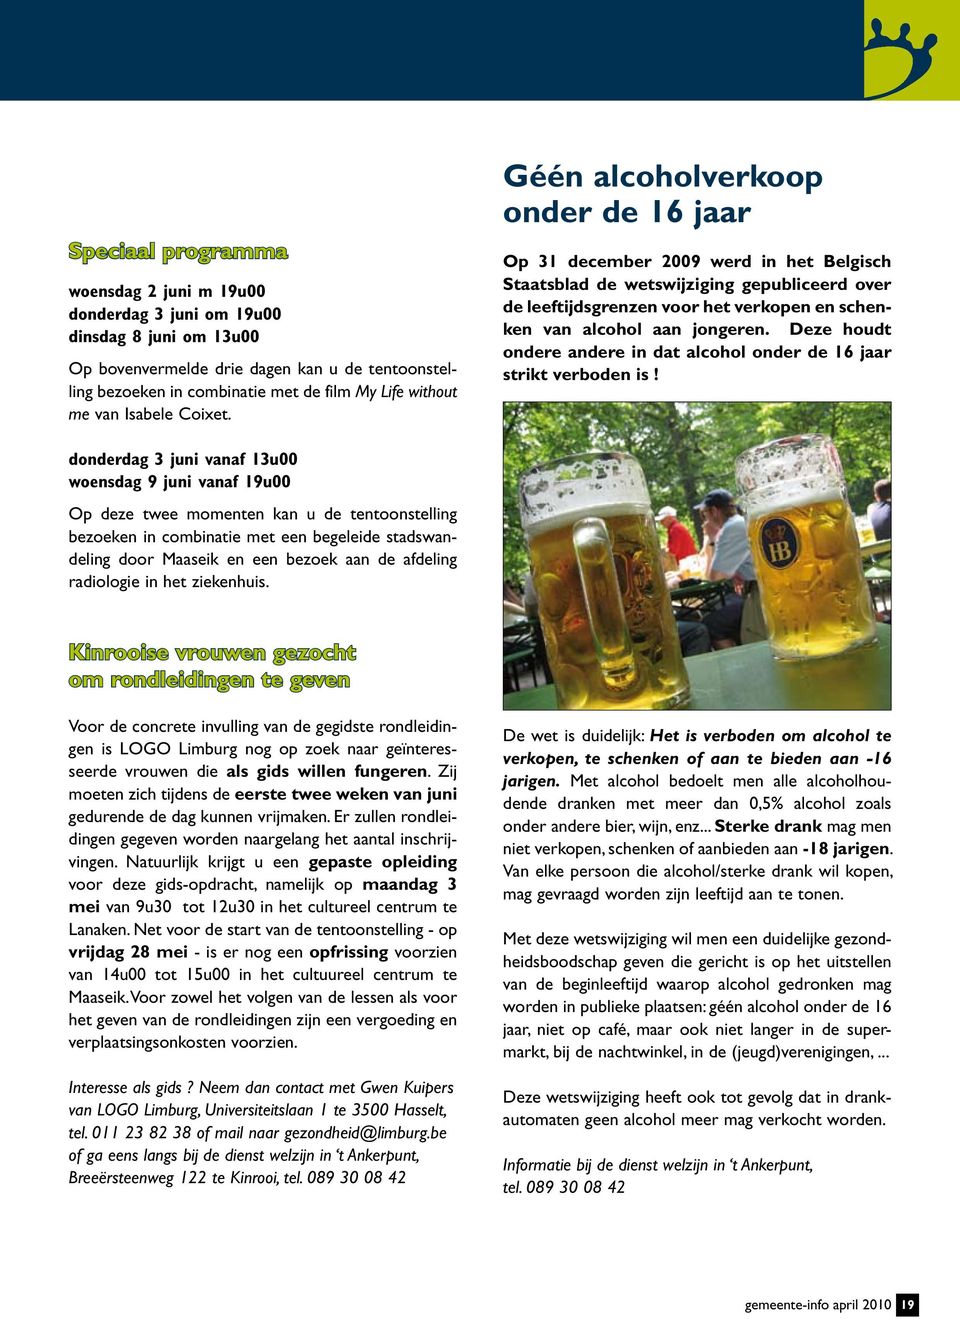 Géén alcoholverkoop onder de 16 jaar Op 31 december 2009 werd in het Belgisch Staatsblad de wetswijziging gepubliceerd over de leeftijdsgrenzen voor het verkopen en schenken van alcohol aan jongeren.